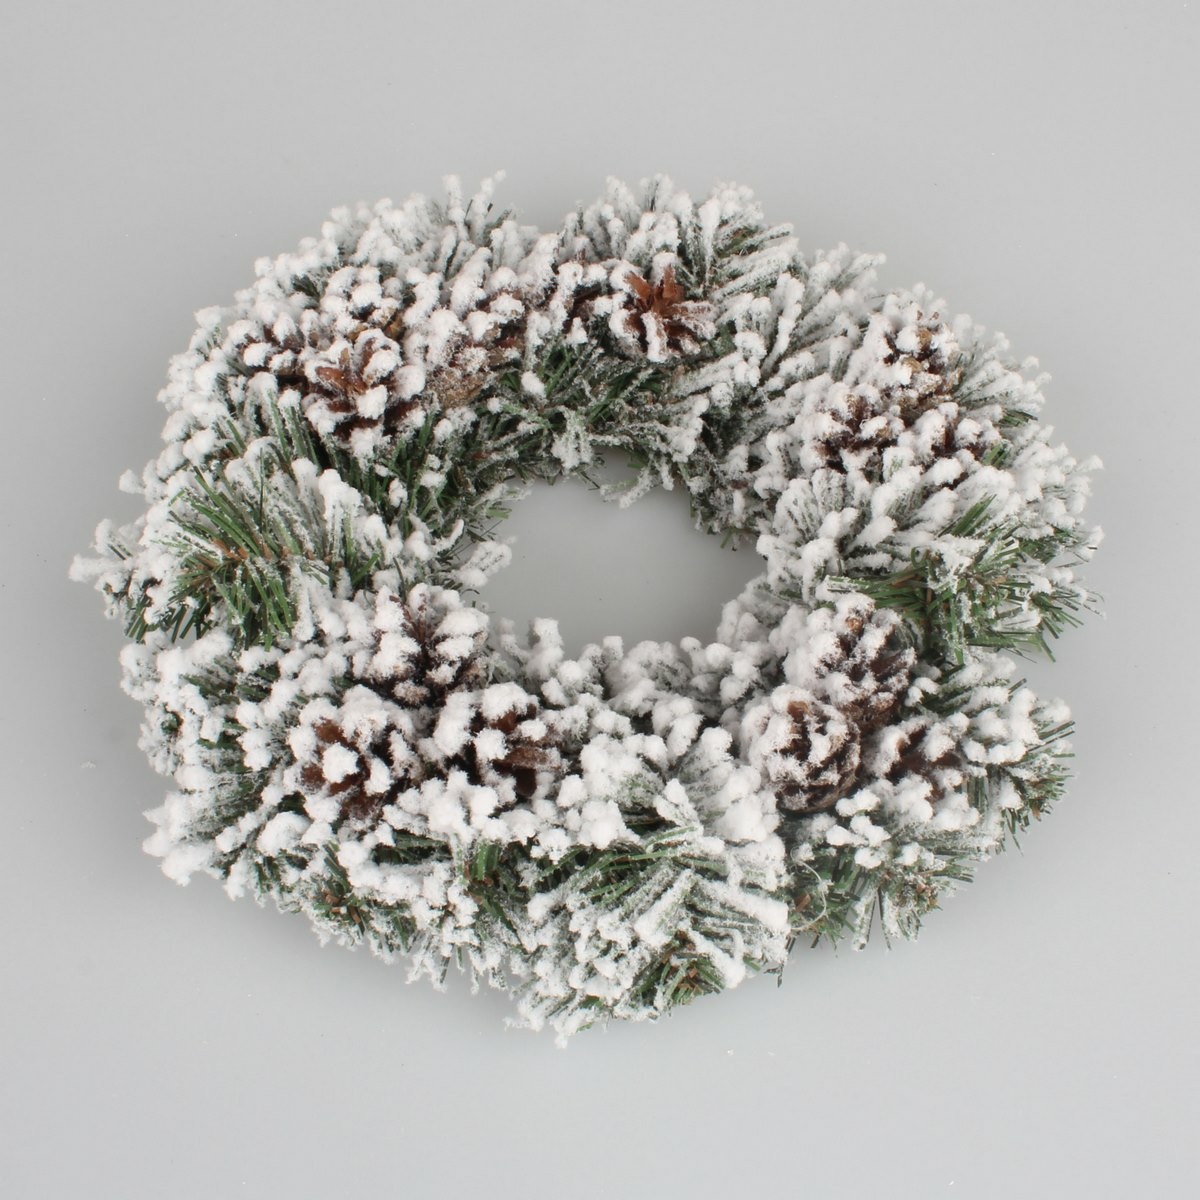 Vánoční věnec Snowy cones bílá, pr. 26 cm